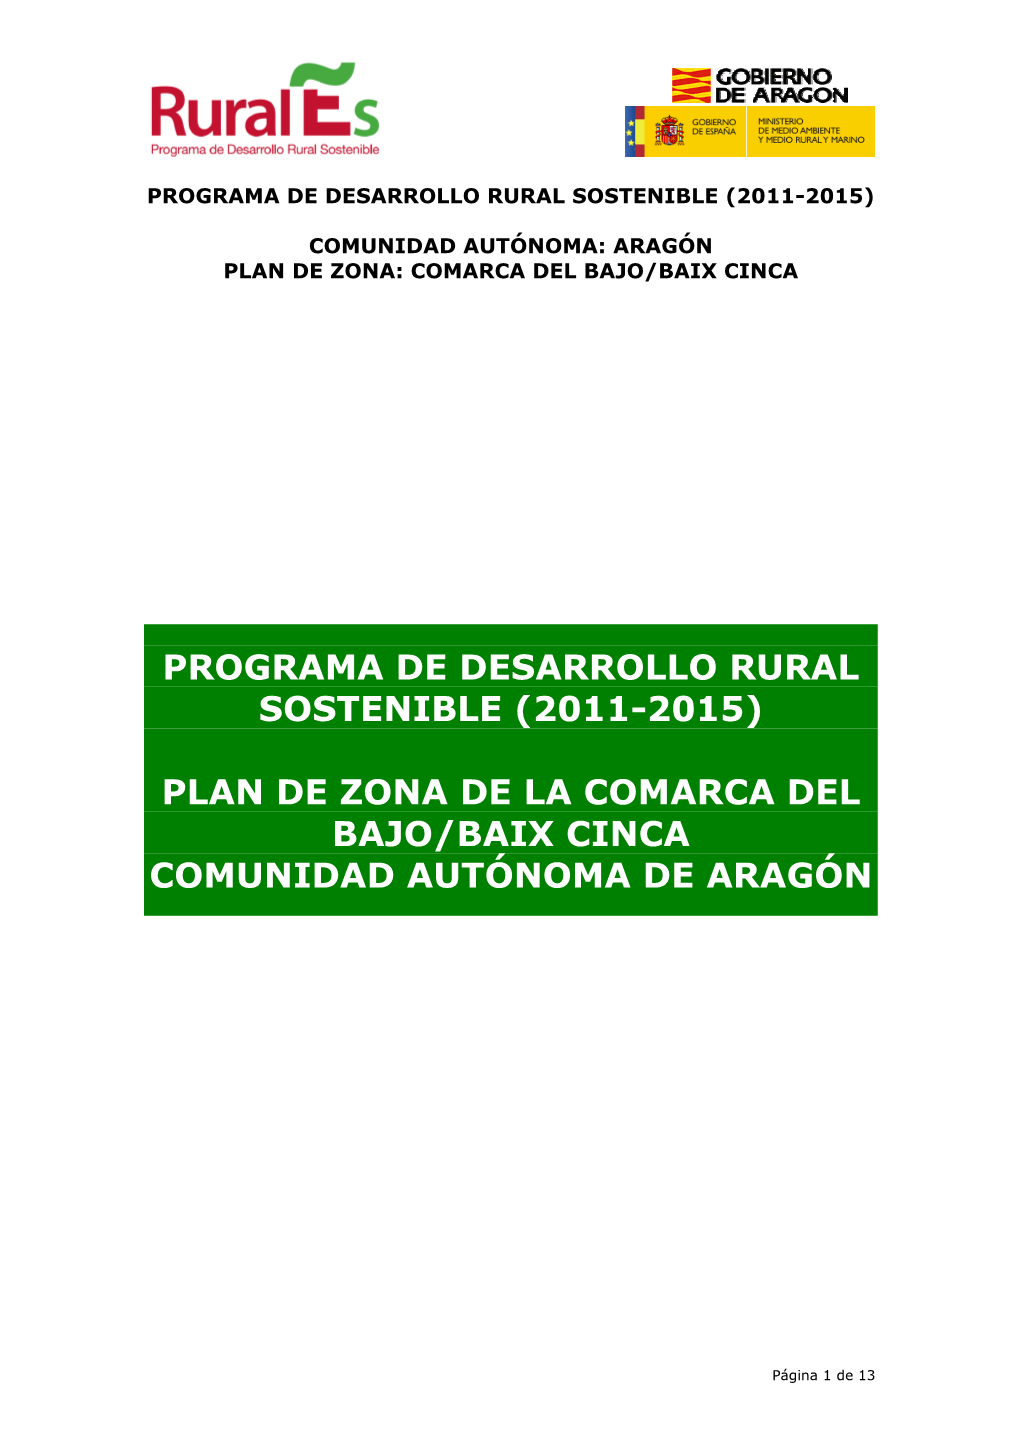 (2011-2015) Plan De Zona De La Comarca Del Bajo/Baix Cinca